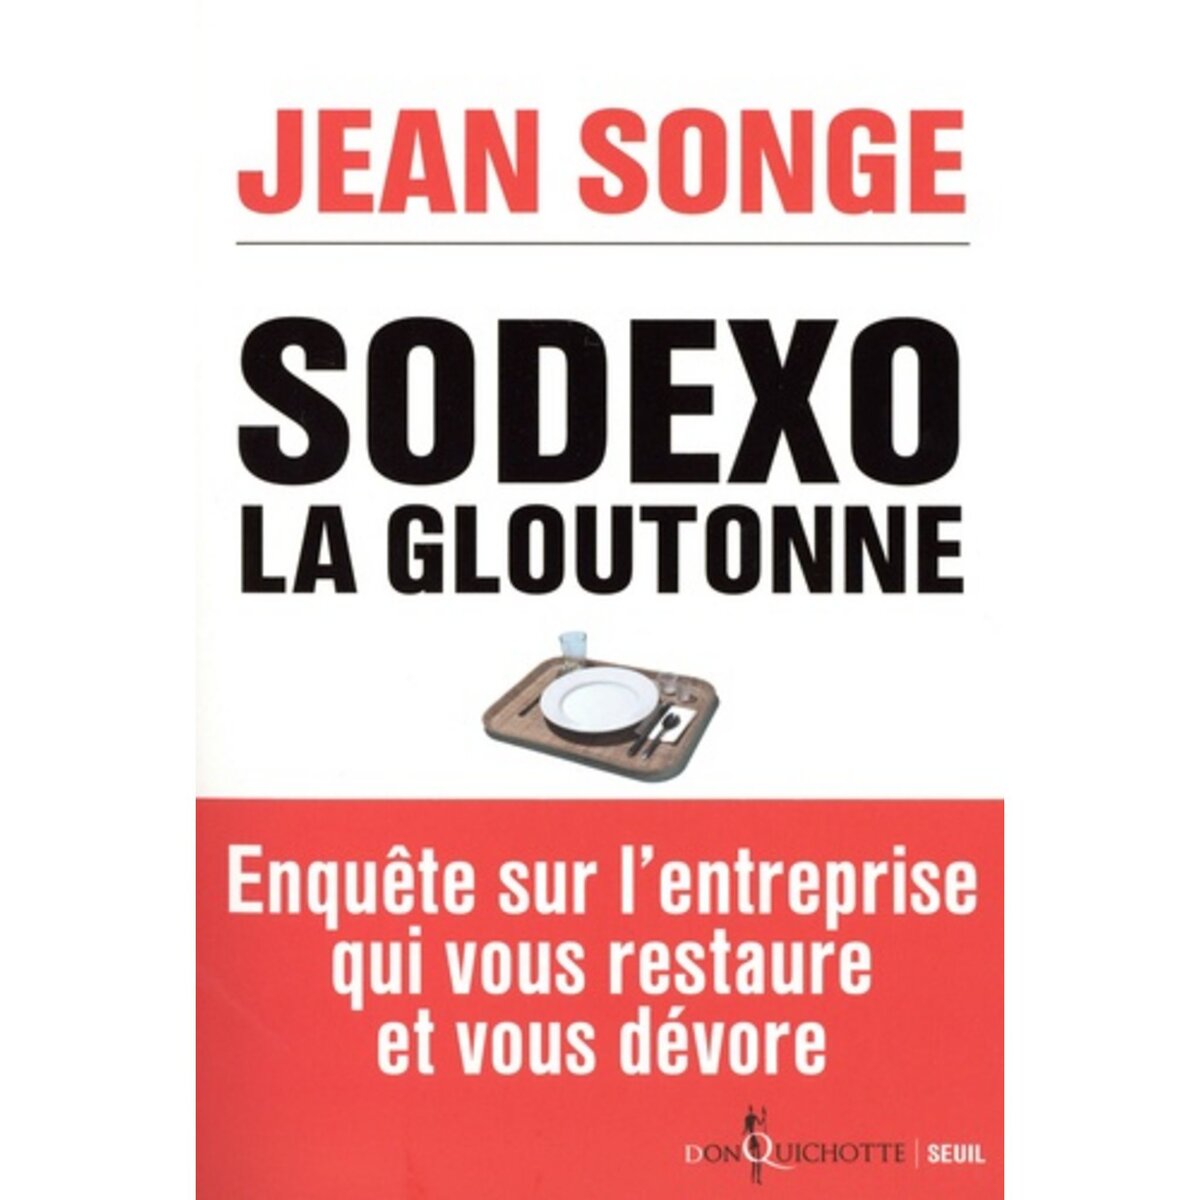  SODEXO LA GLOUTONNE, Songe Jean